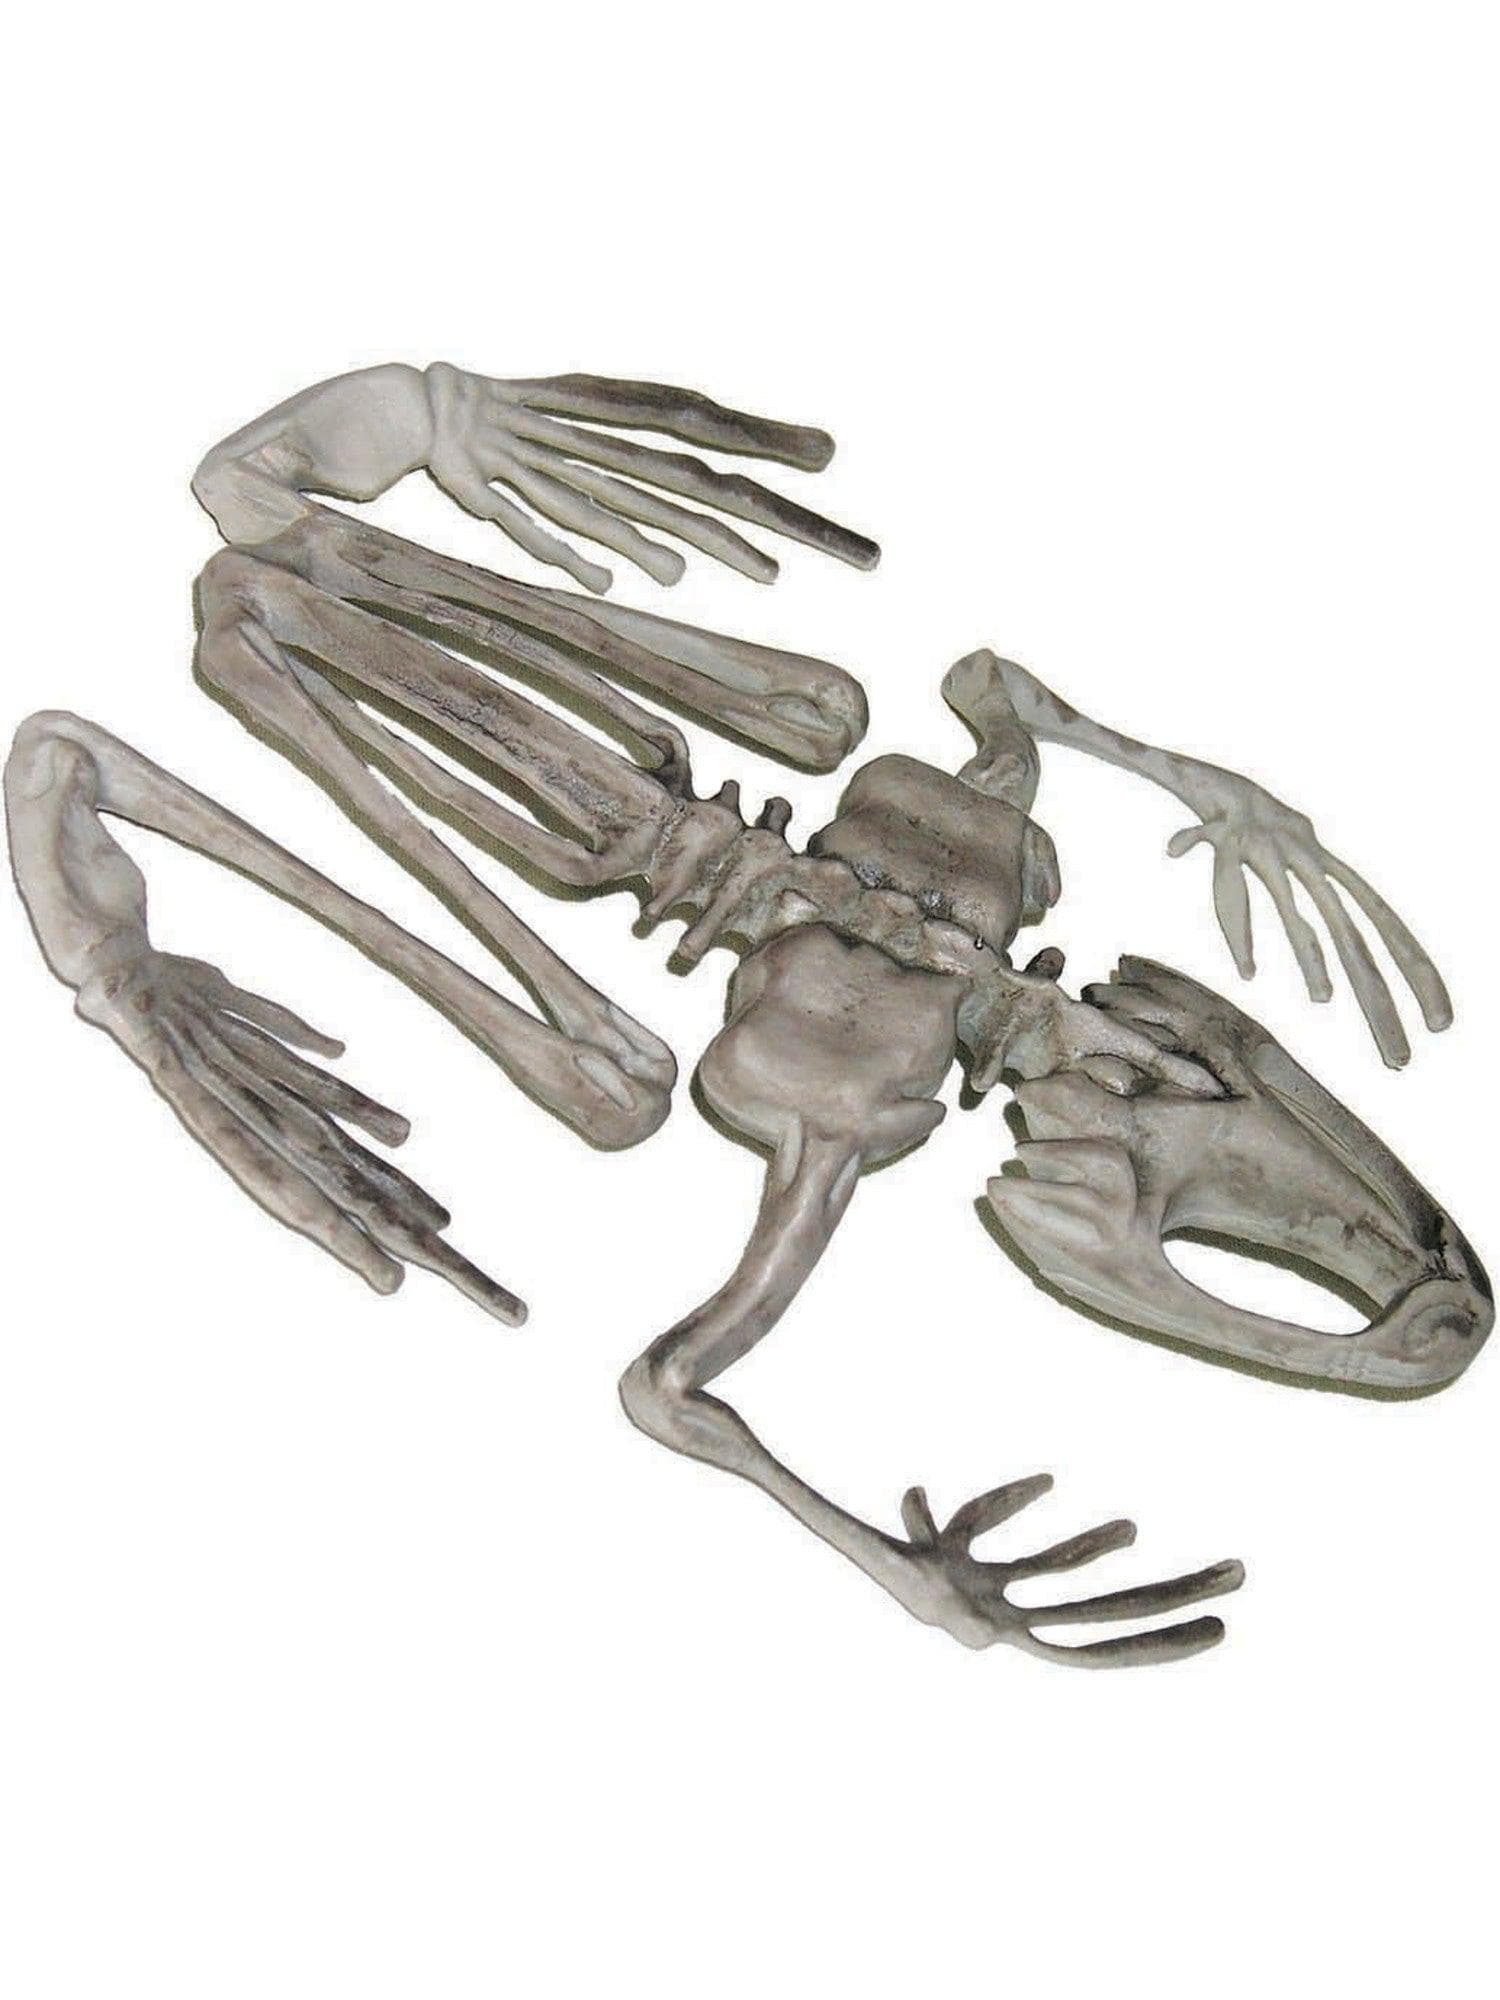 7-inch Skeleton Frog Decoration - costumes.com